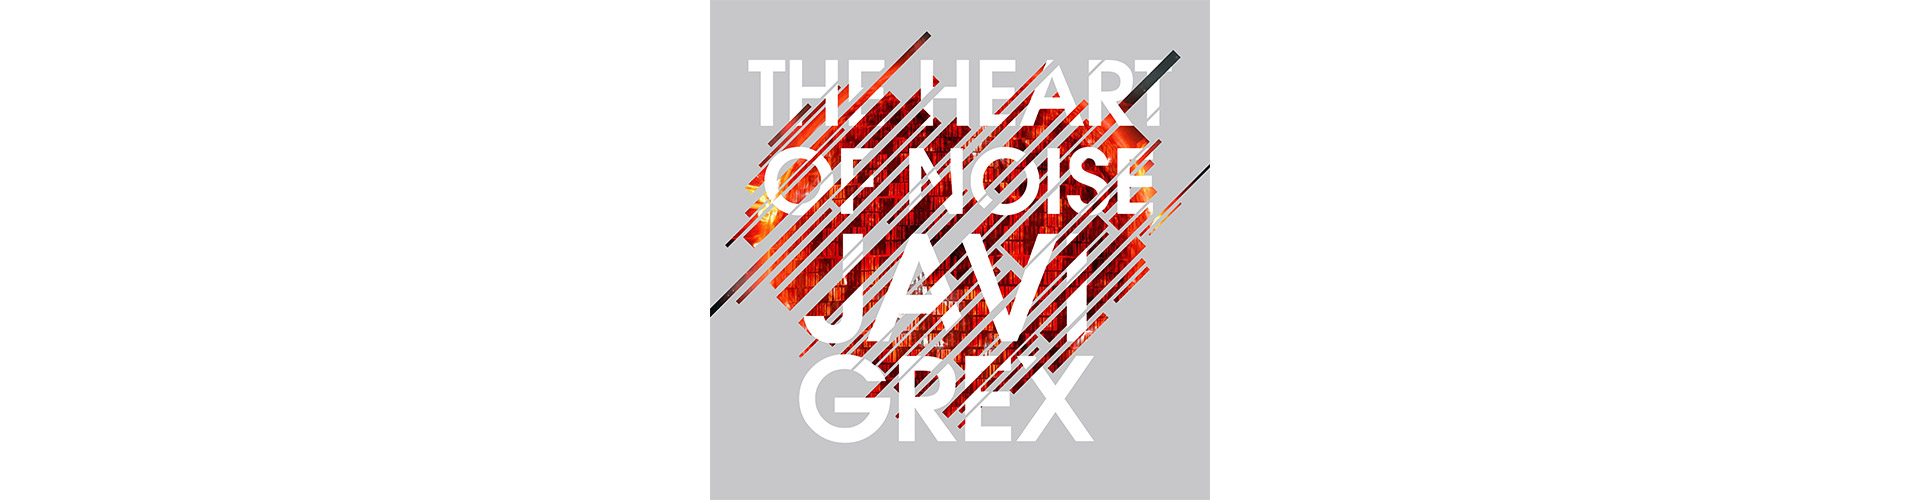 imagen para RRSS Heart Of Noise de Javi Grex